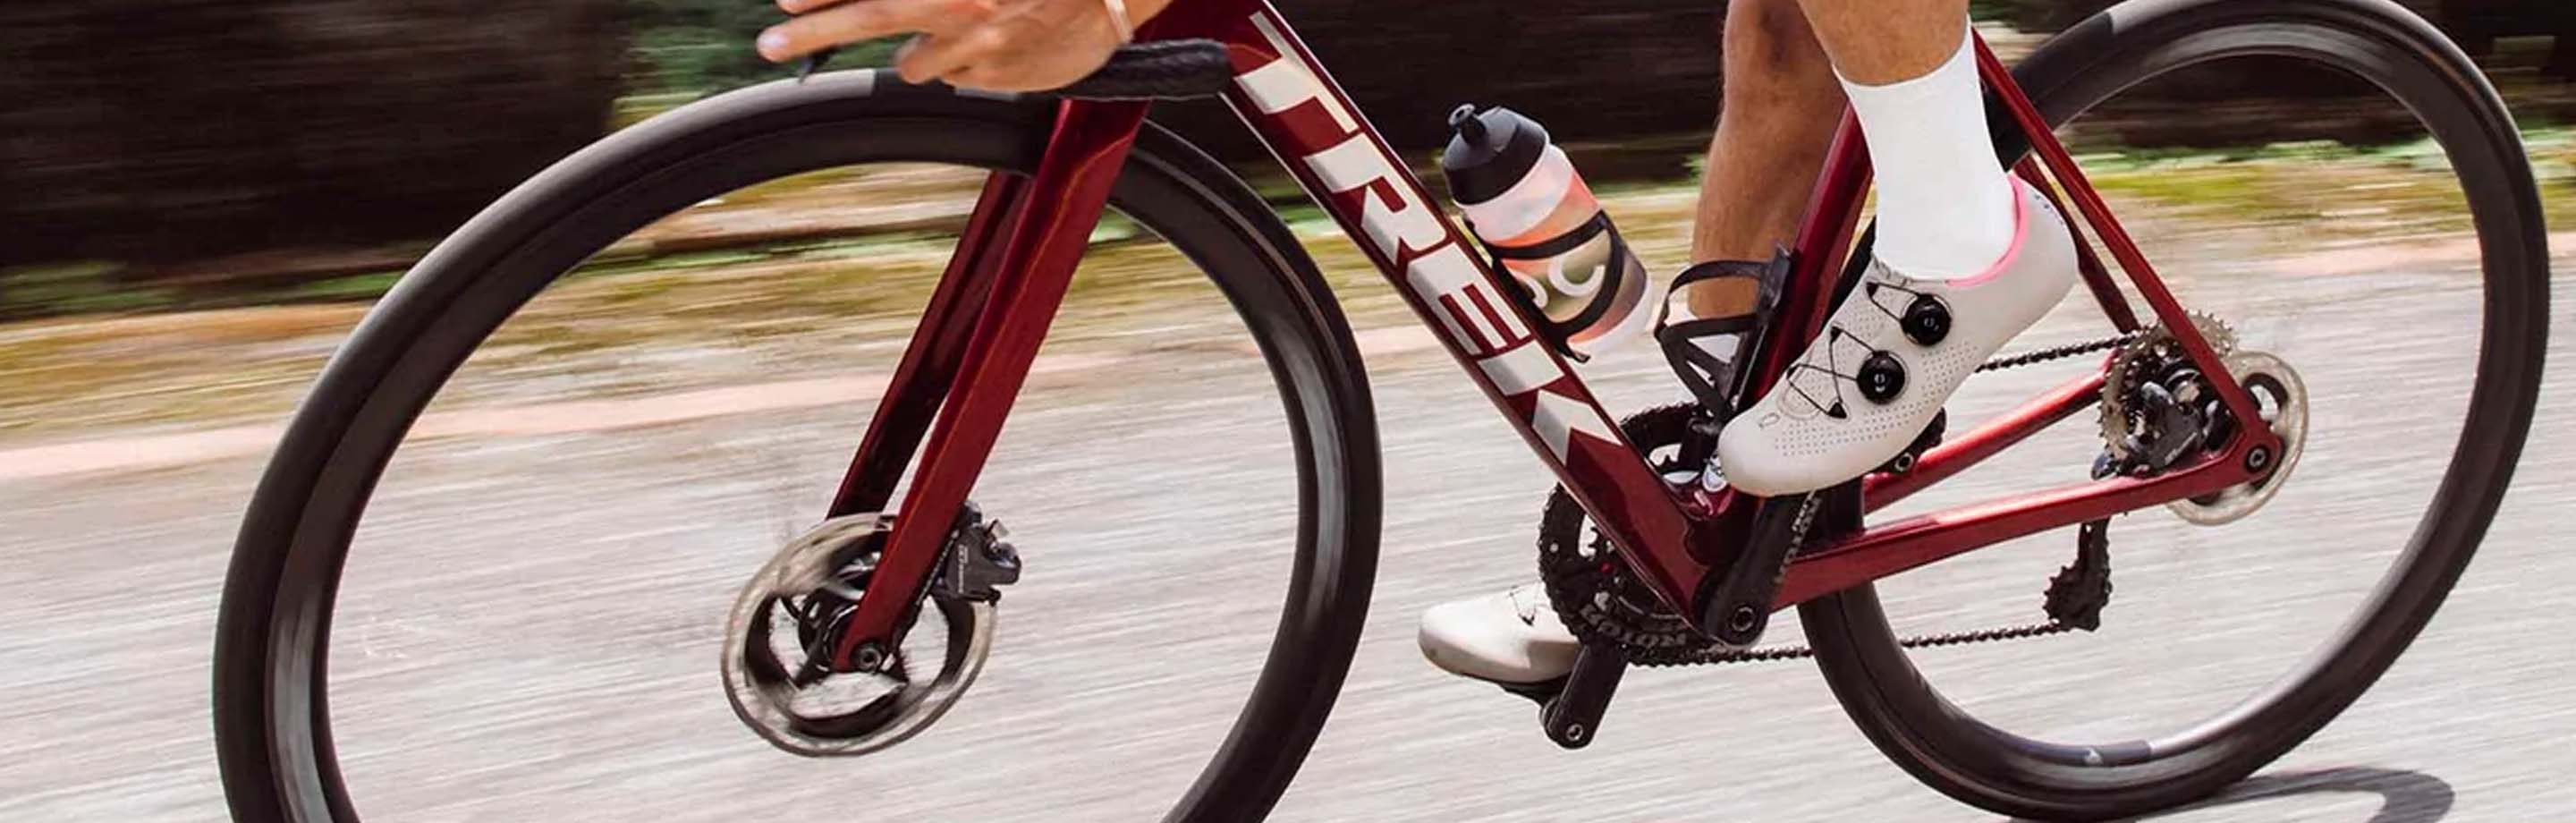 QUOC fietsschoenen en schoeisel - tijdloos design